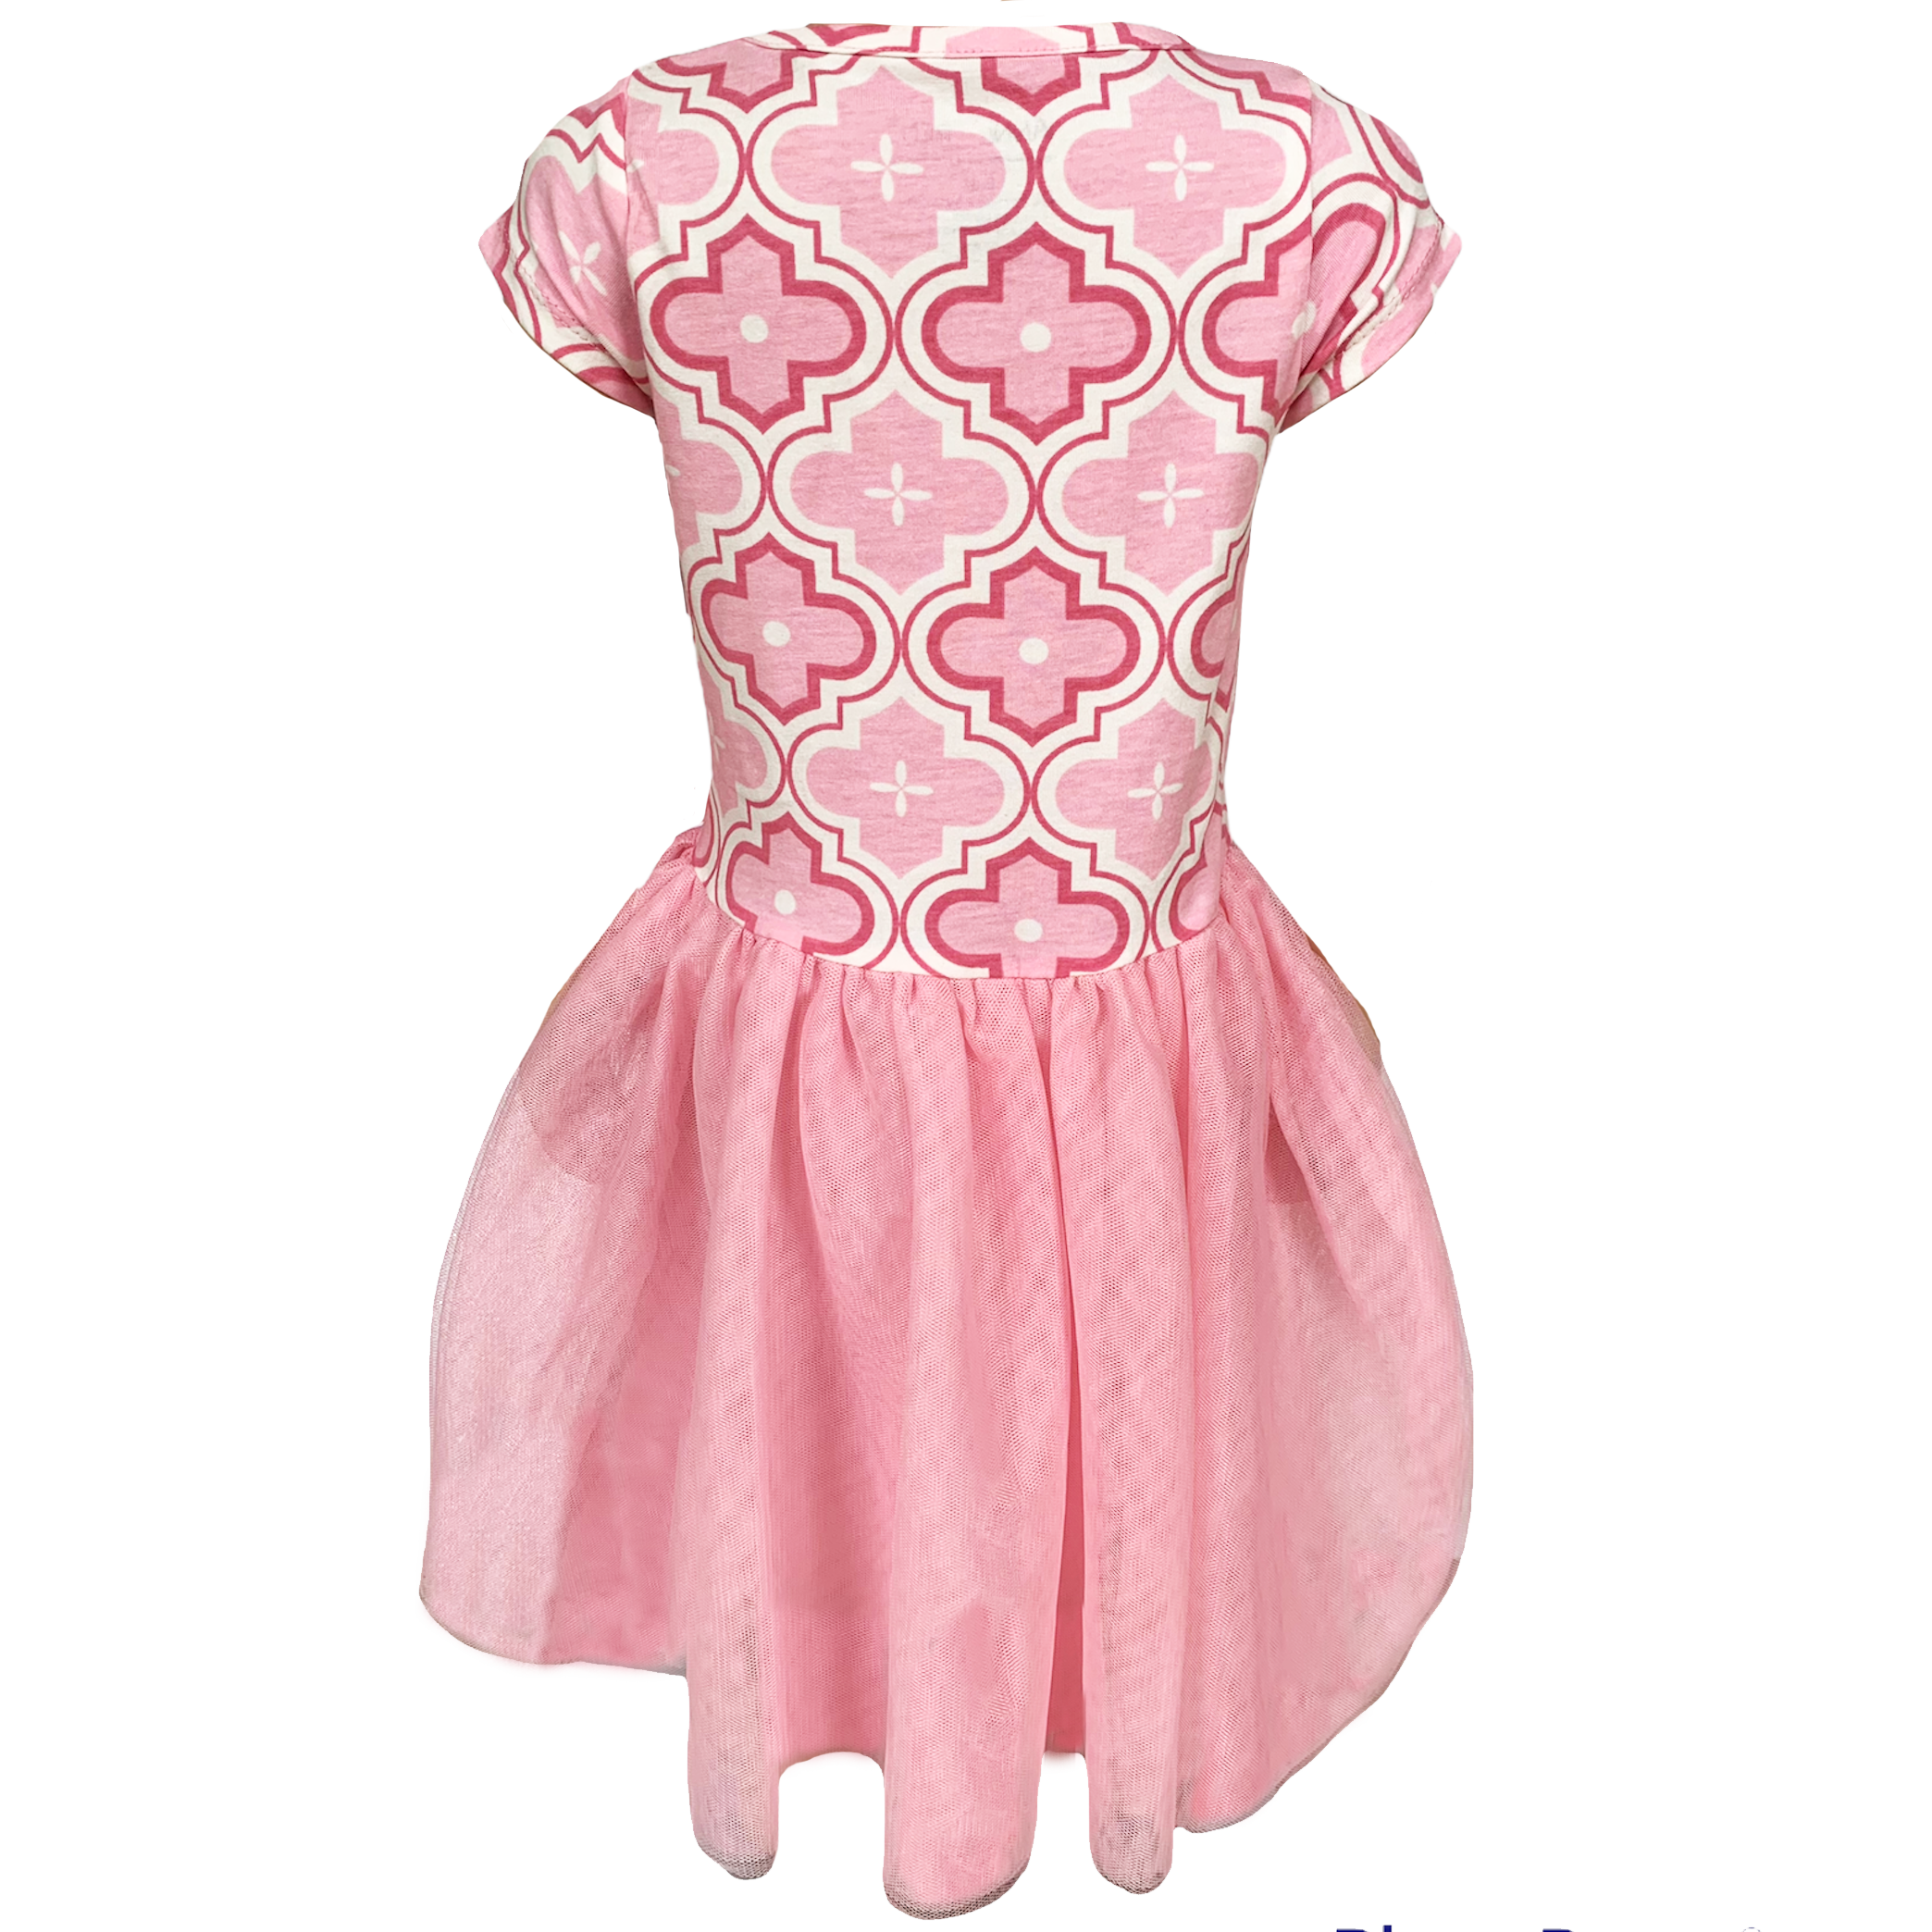 AnnLoren Girls Dress Pink Tulle & Pink Arabesque Easter Party Dress-5